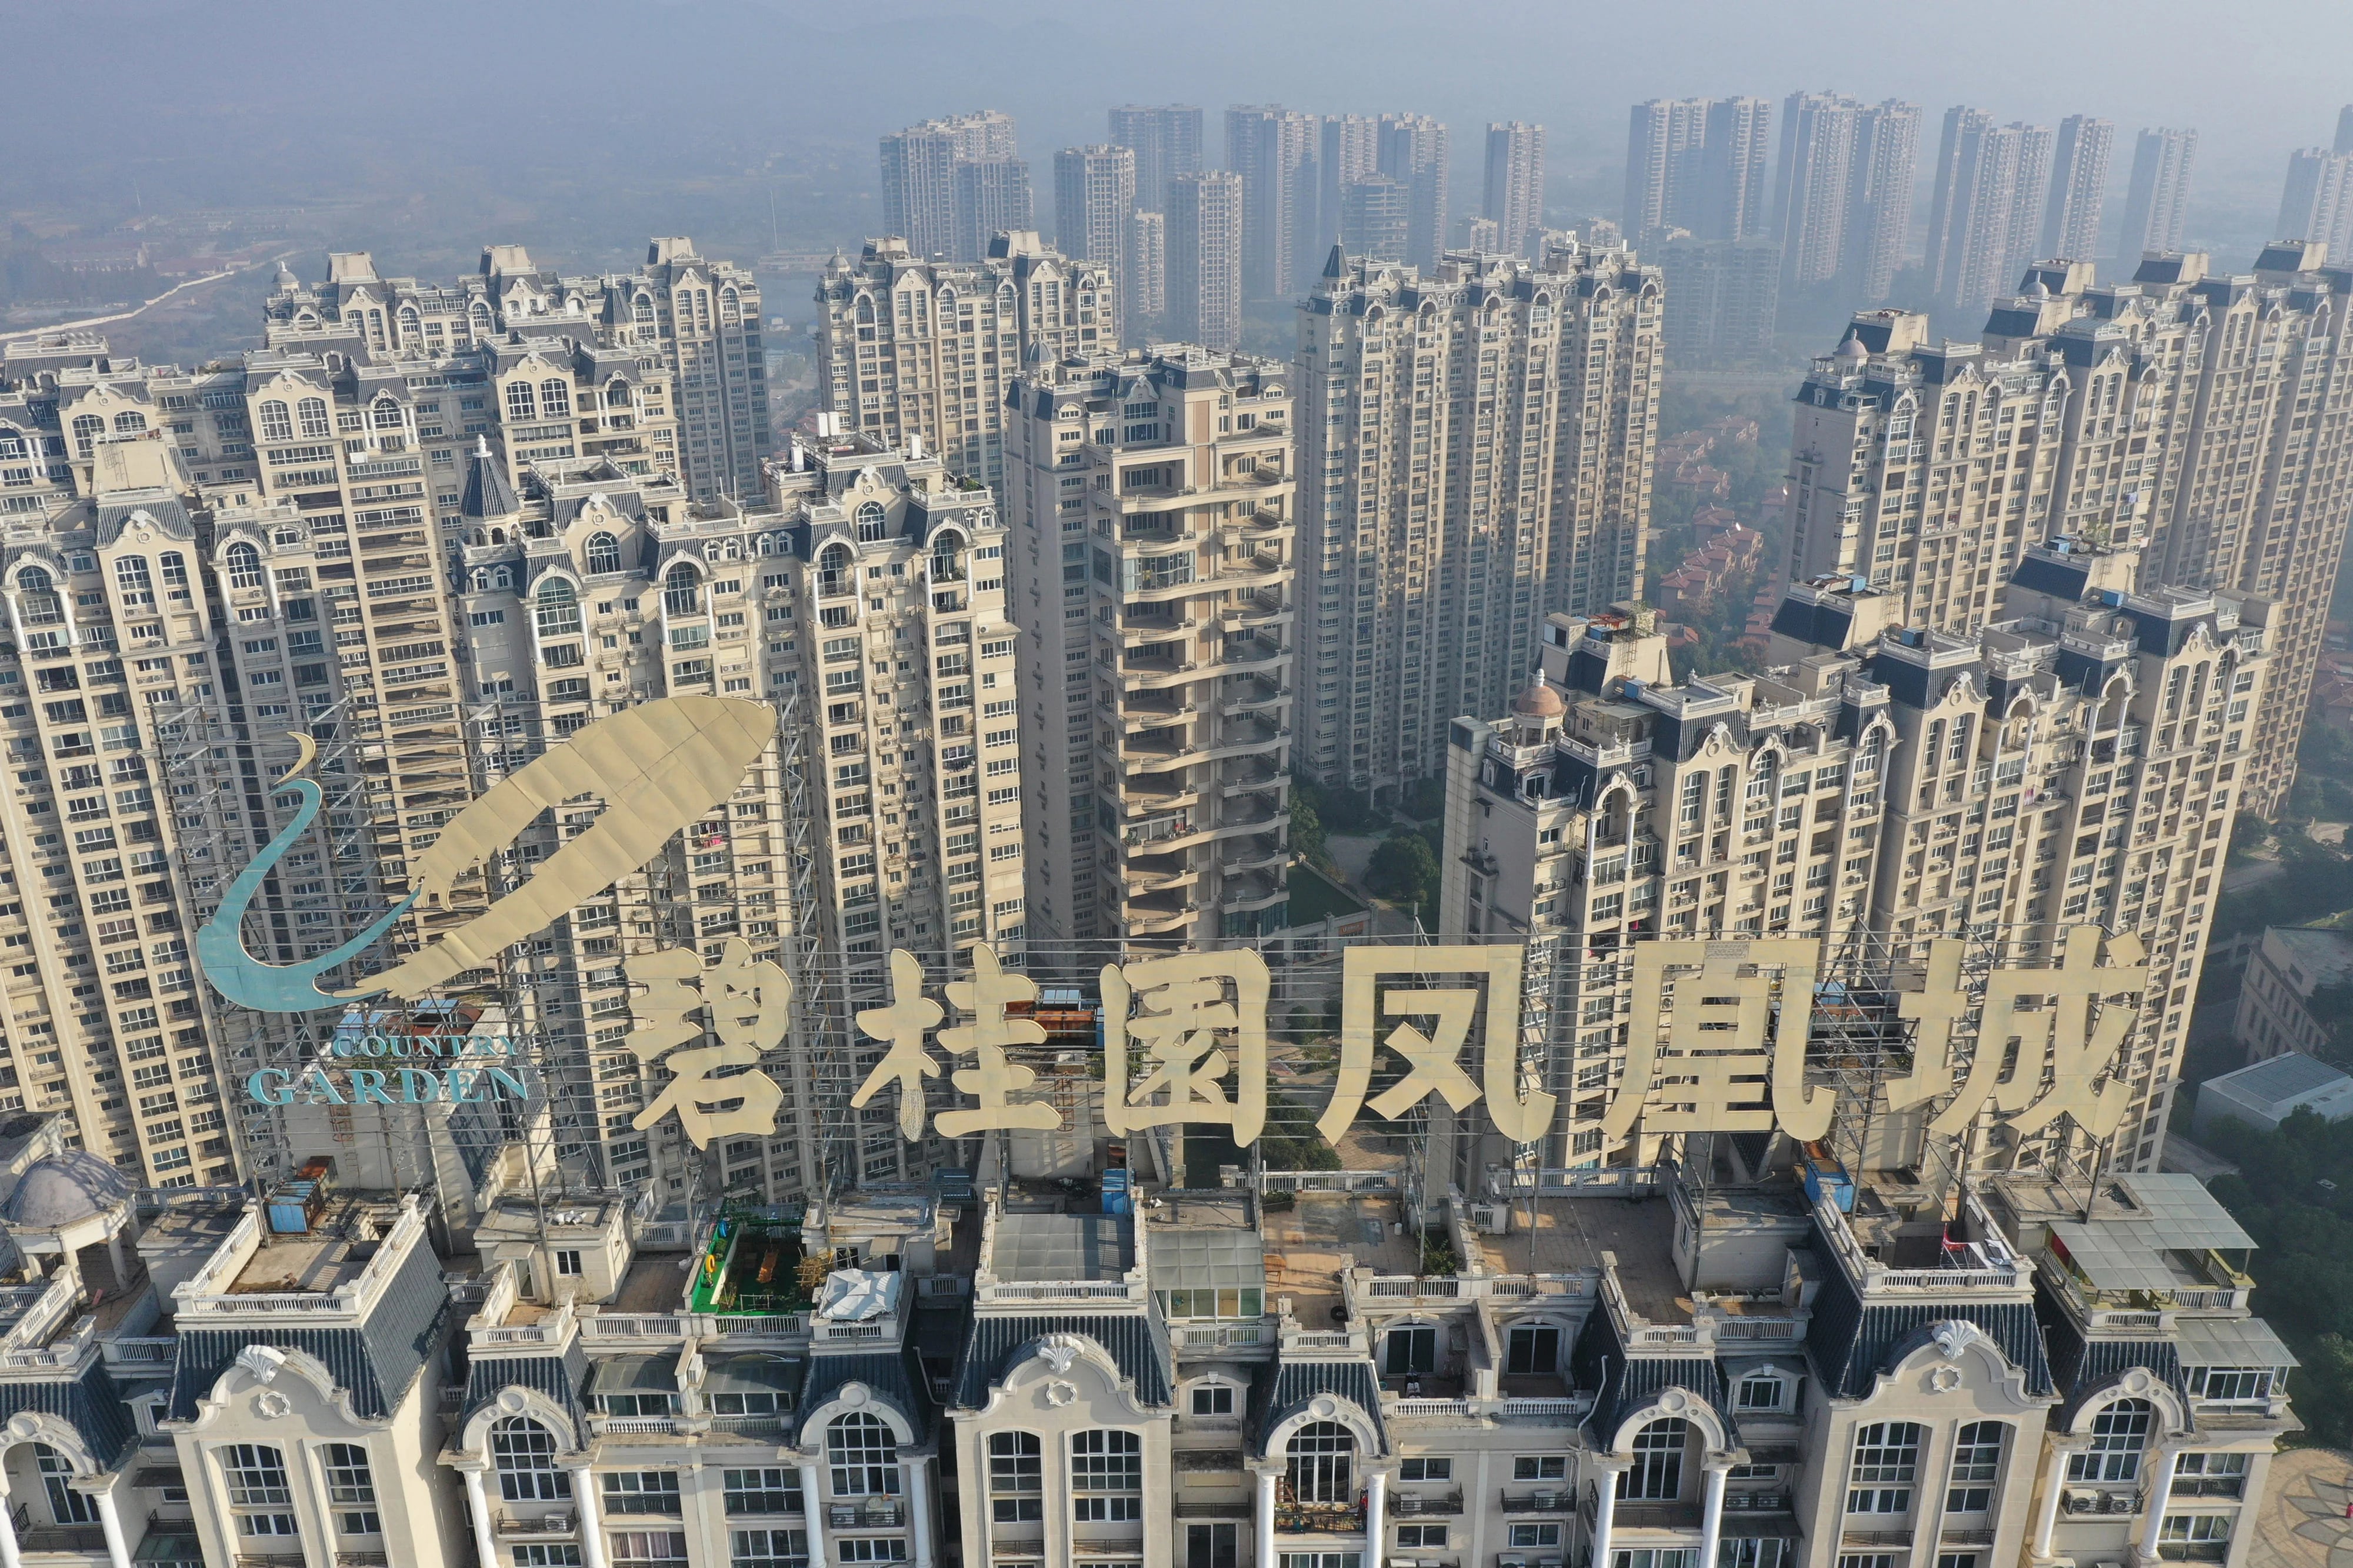 La crisis del sector inmobiliario pone en jaque al sistema financiero de China: “Es solo la parte visible del iceberg”